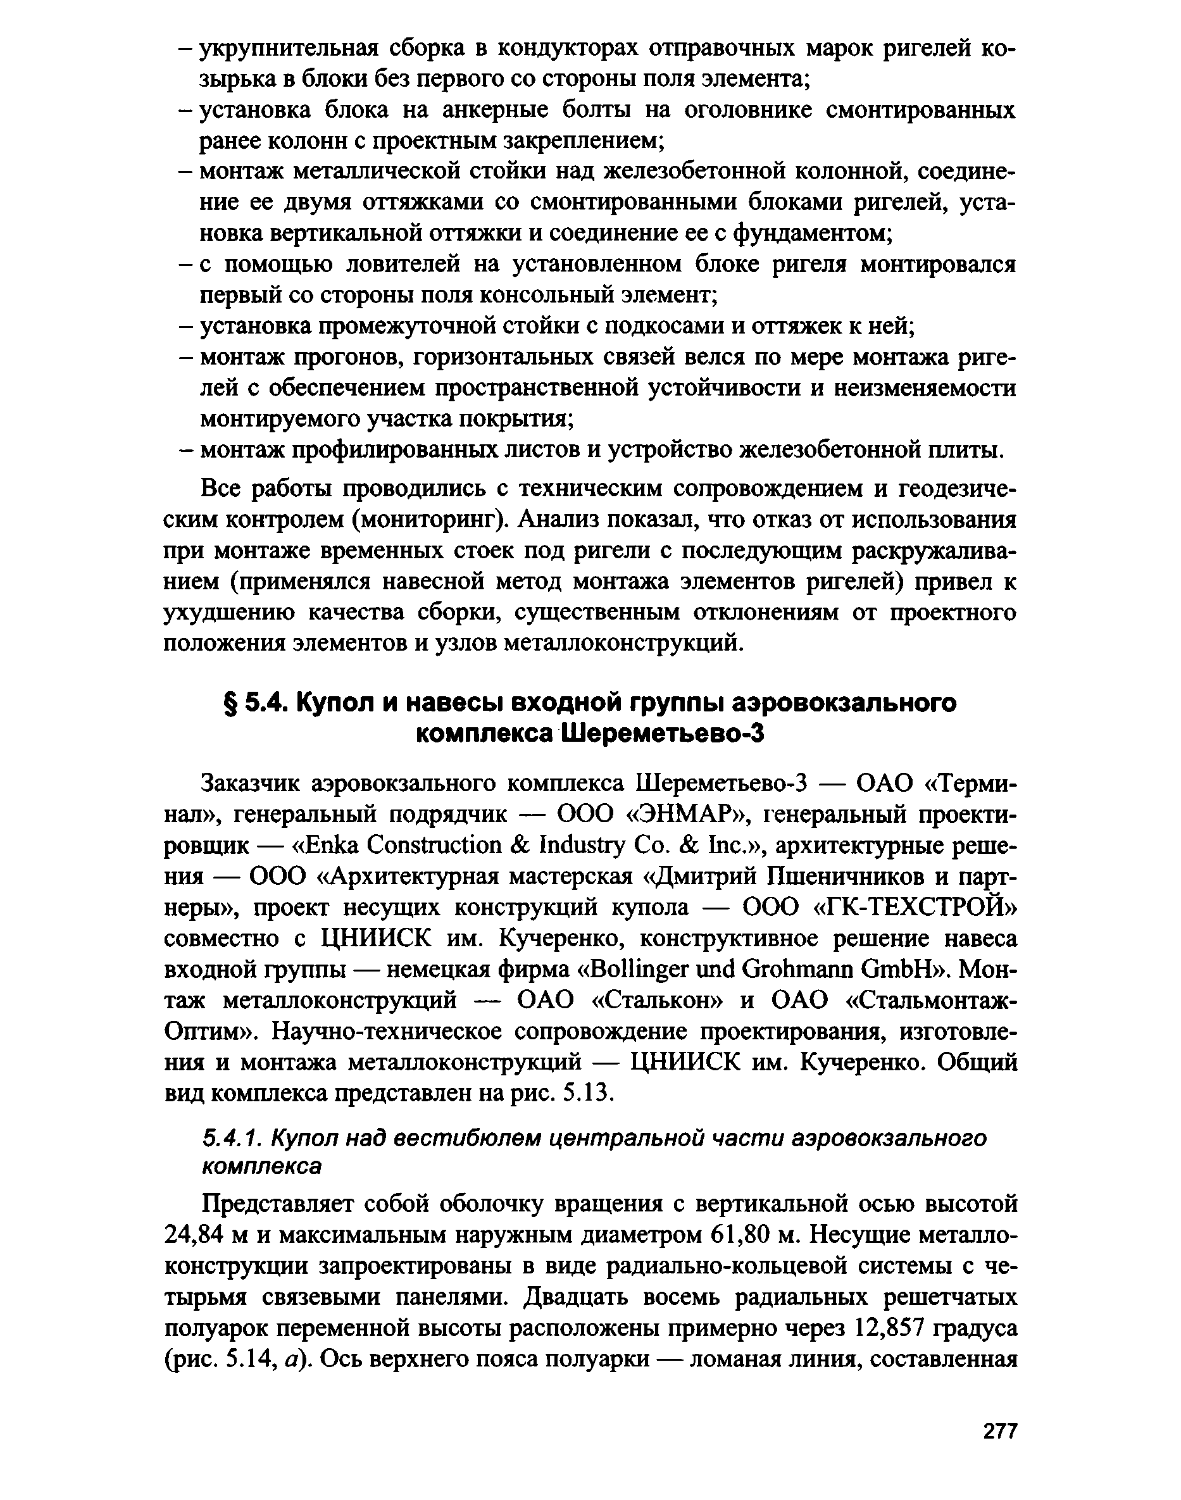 § 5.4. Купол и навесы входной группы аэровокзального комплекса Шереметьево-3